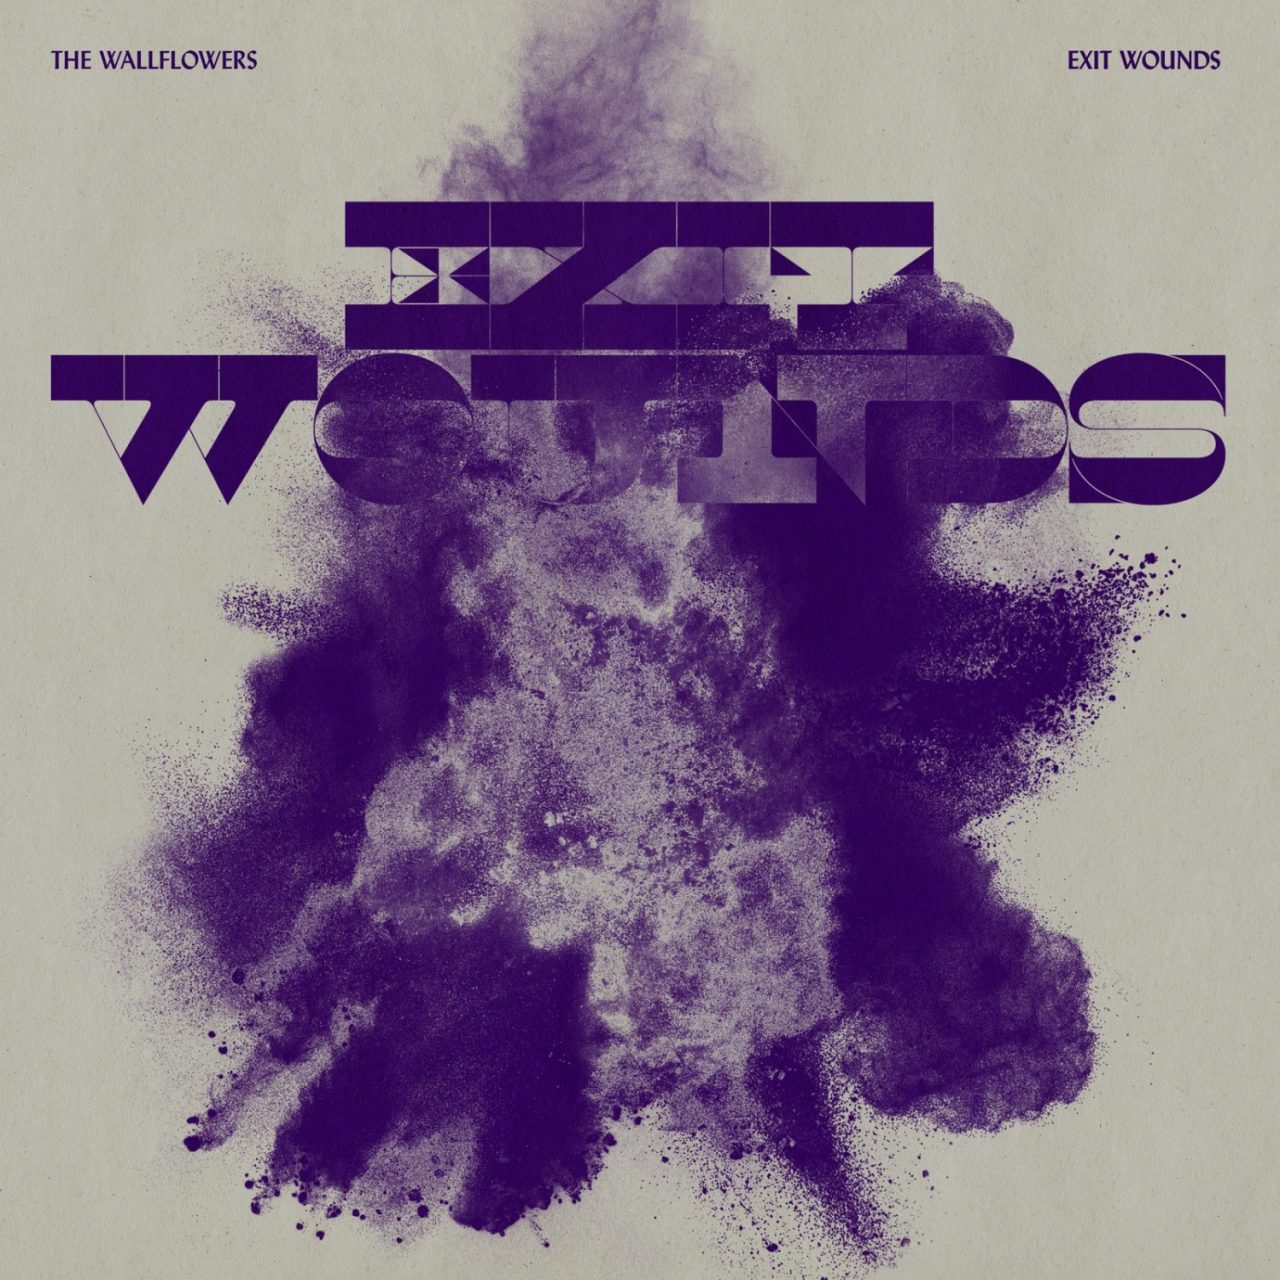 das Albumcover "Exit Wounds" von The Wallflowers hat einen hellen Hintergrund. Im Vordergrund ist eine violette Farbexplosion.